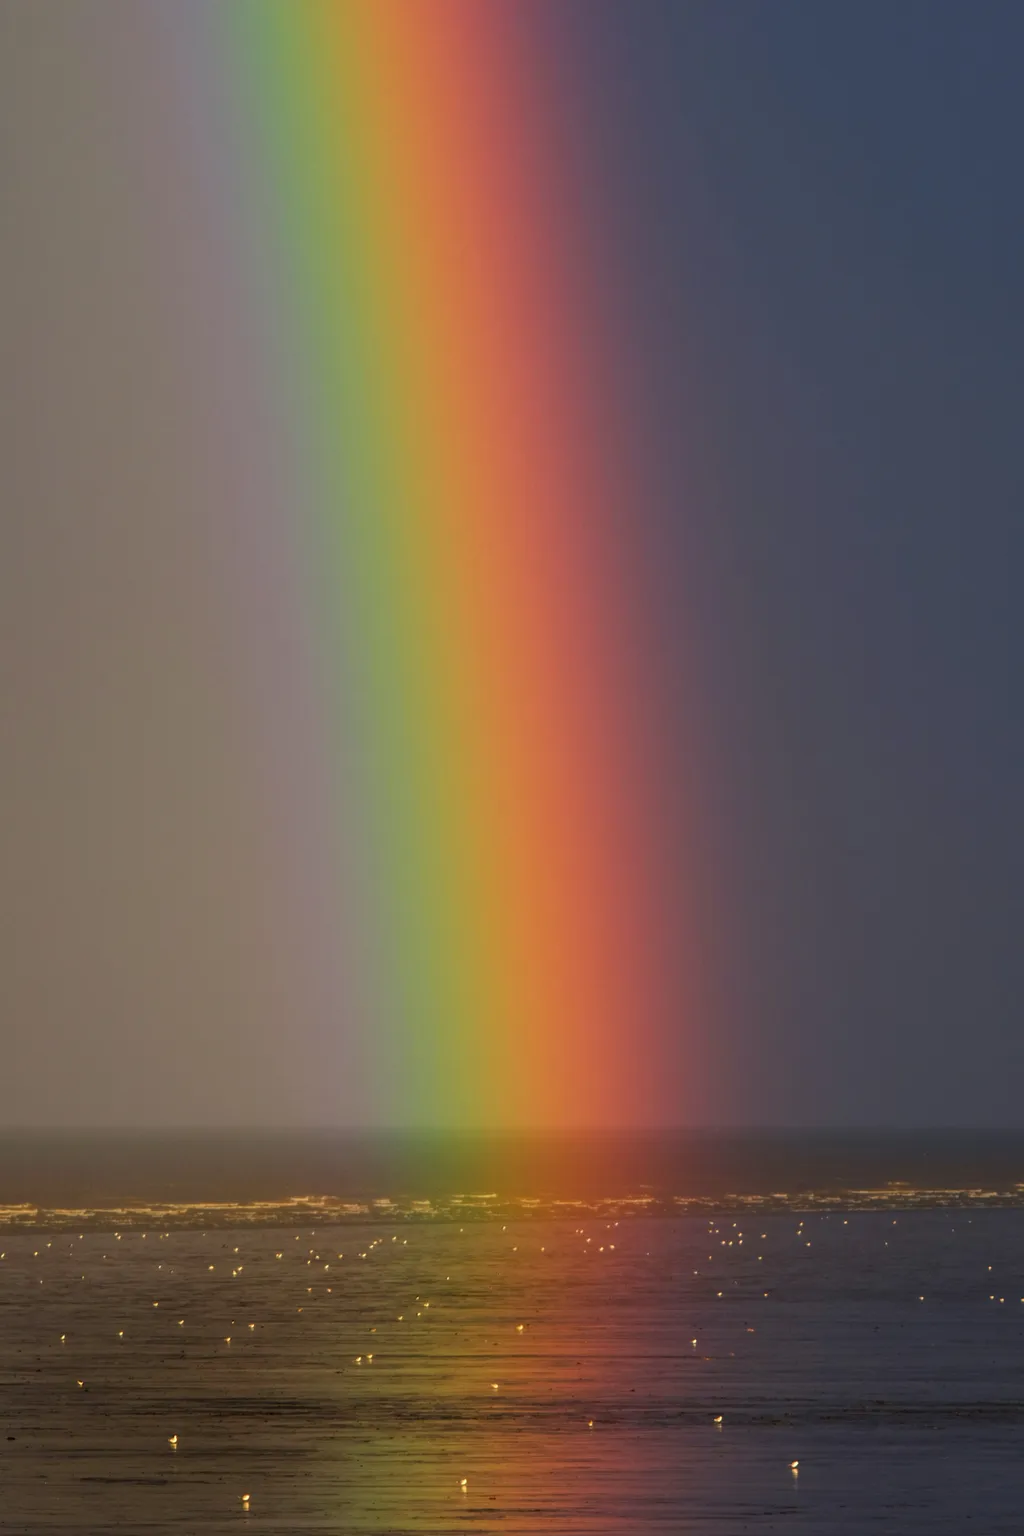 O arco-íris é formado pela refração da luz em gotículas de água na atmosfera (Imagem: Zoltan Tasi/Unsplash)